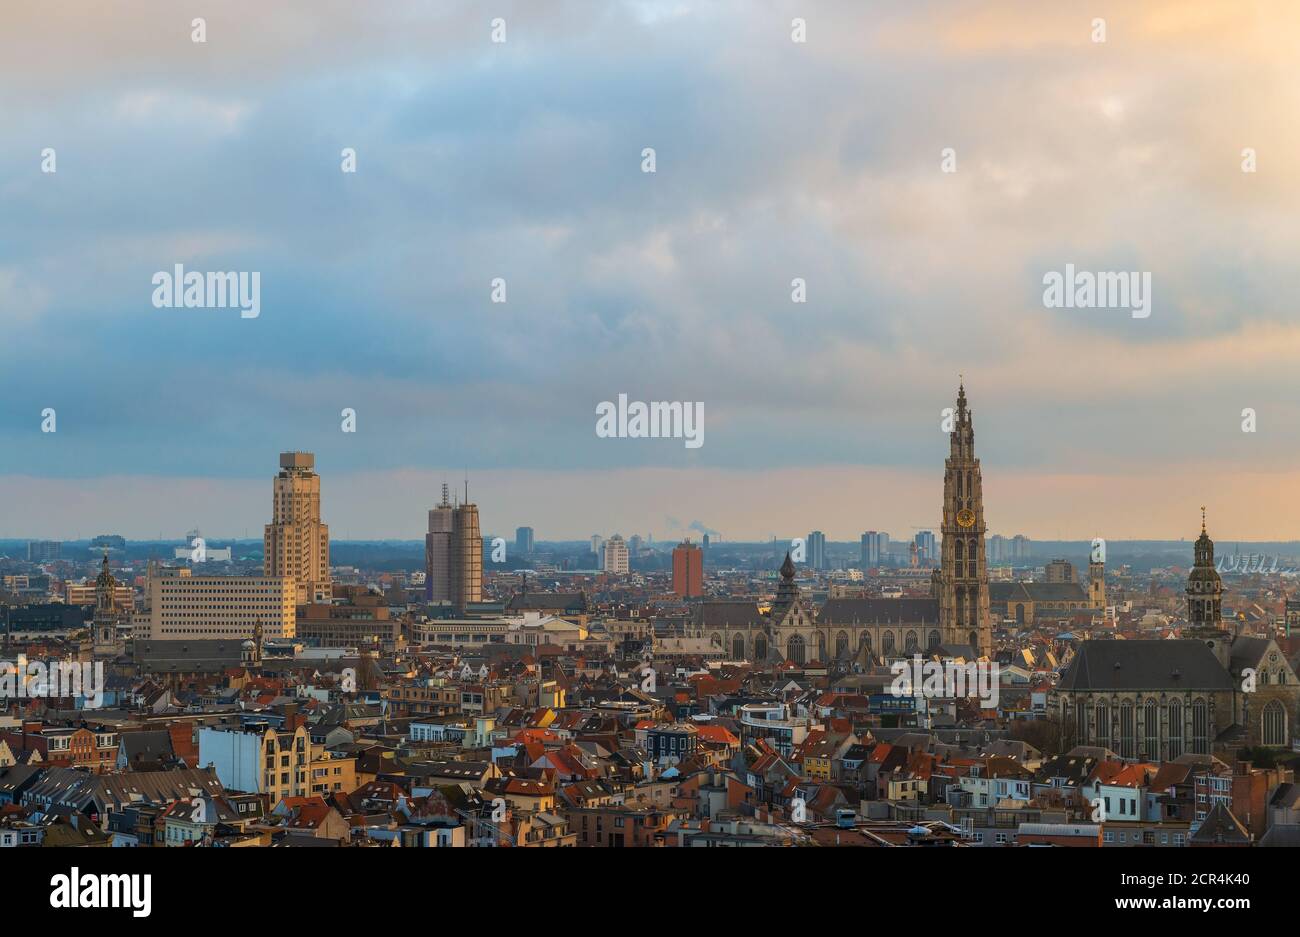 Paesaggio urbano di Anversa (Anversa) al tramonto con la torre della cattedrale, Belgio. Foto Stock